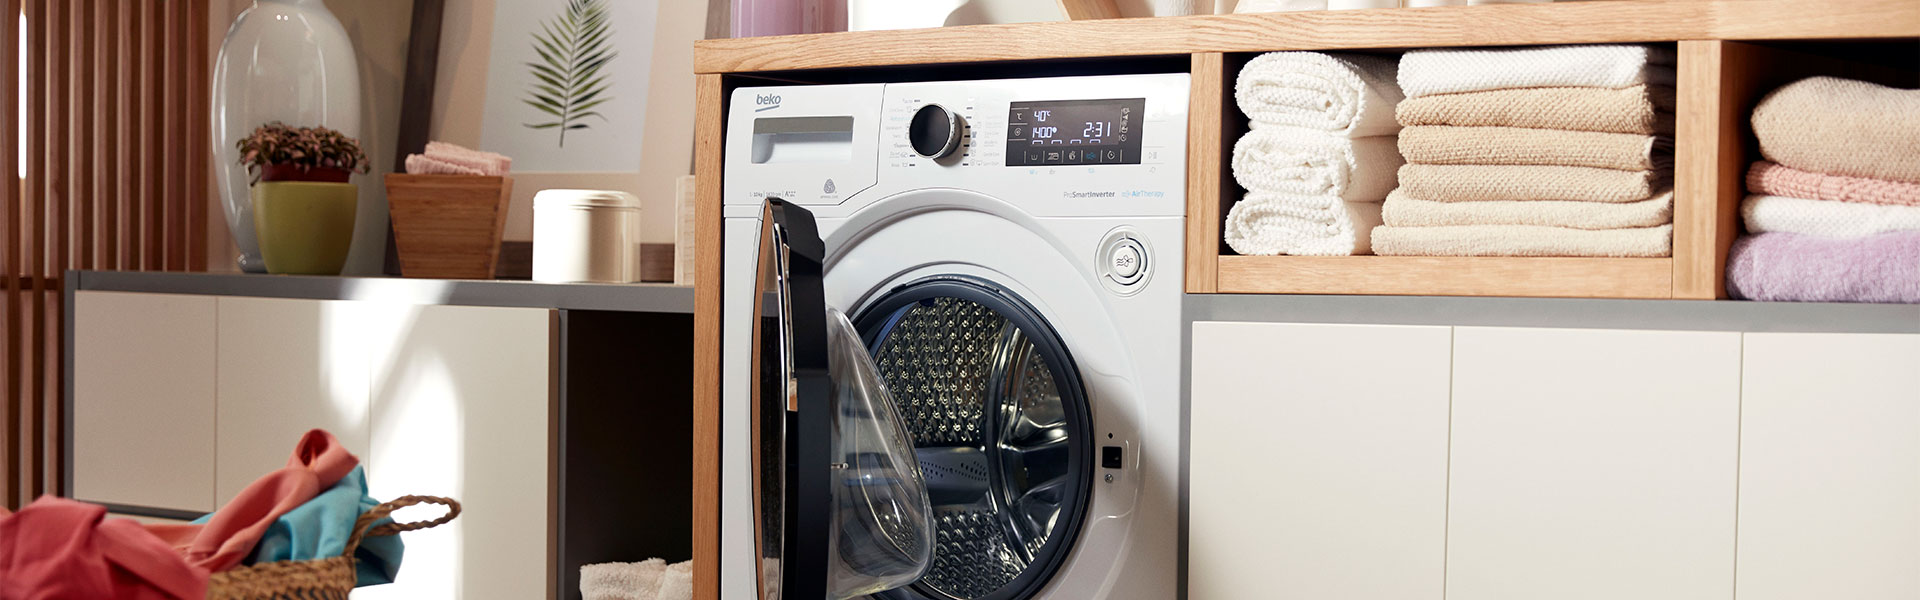 Mi lavadora mancha la ropa: razones y soluciones